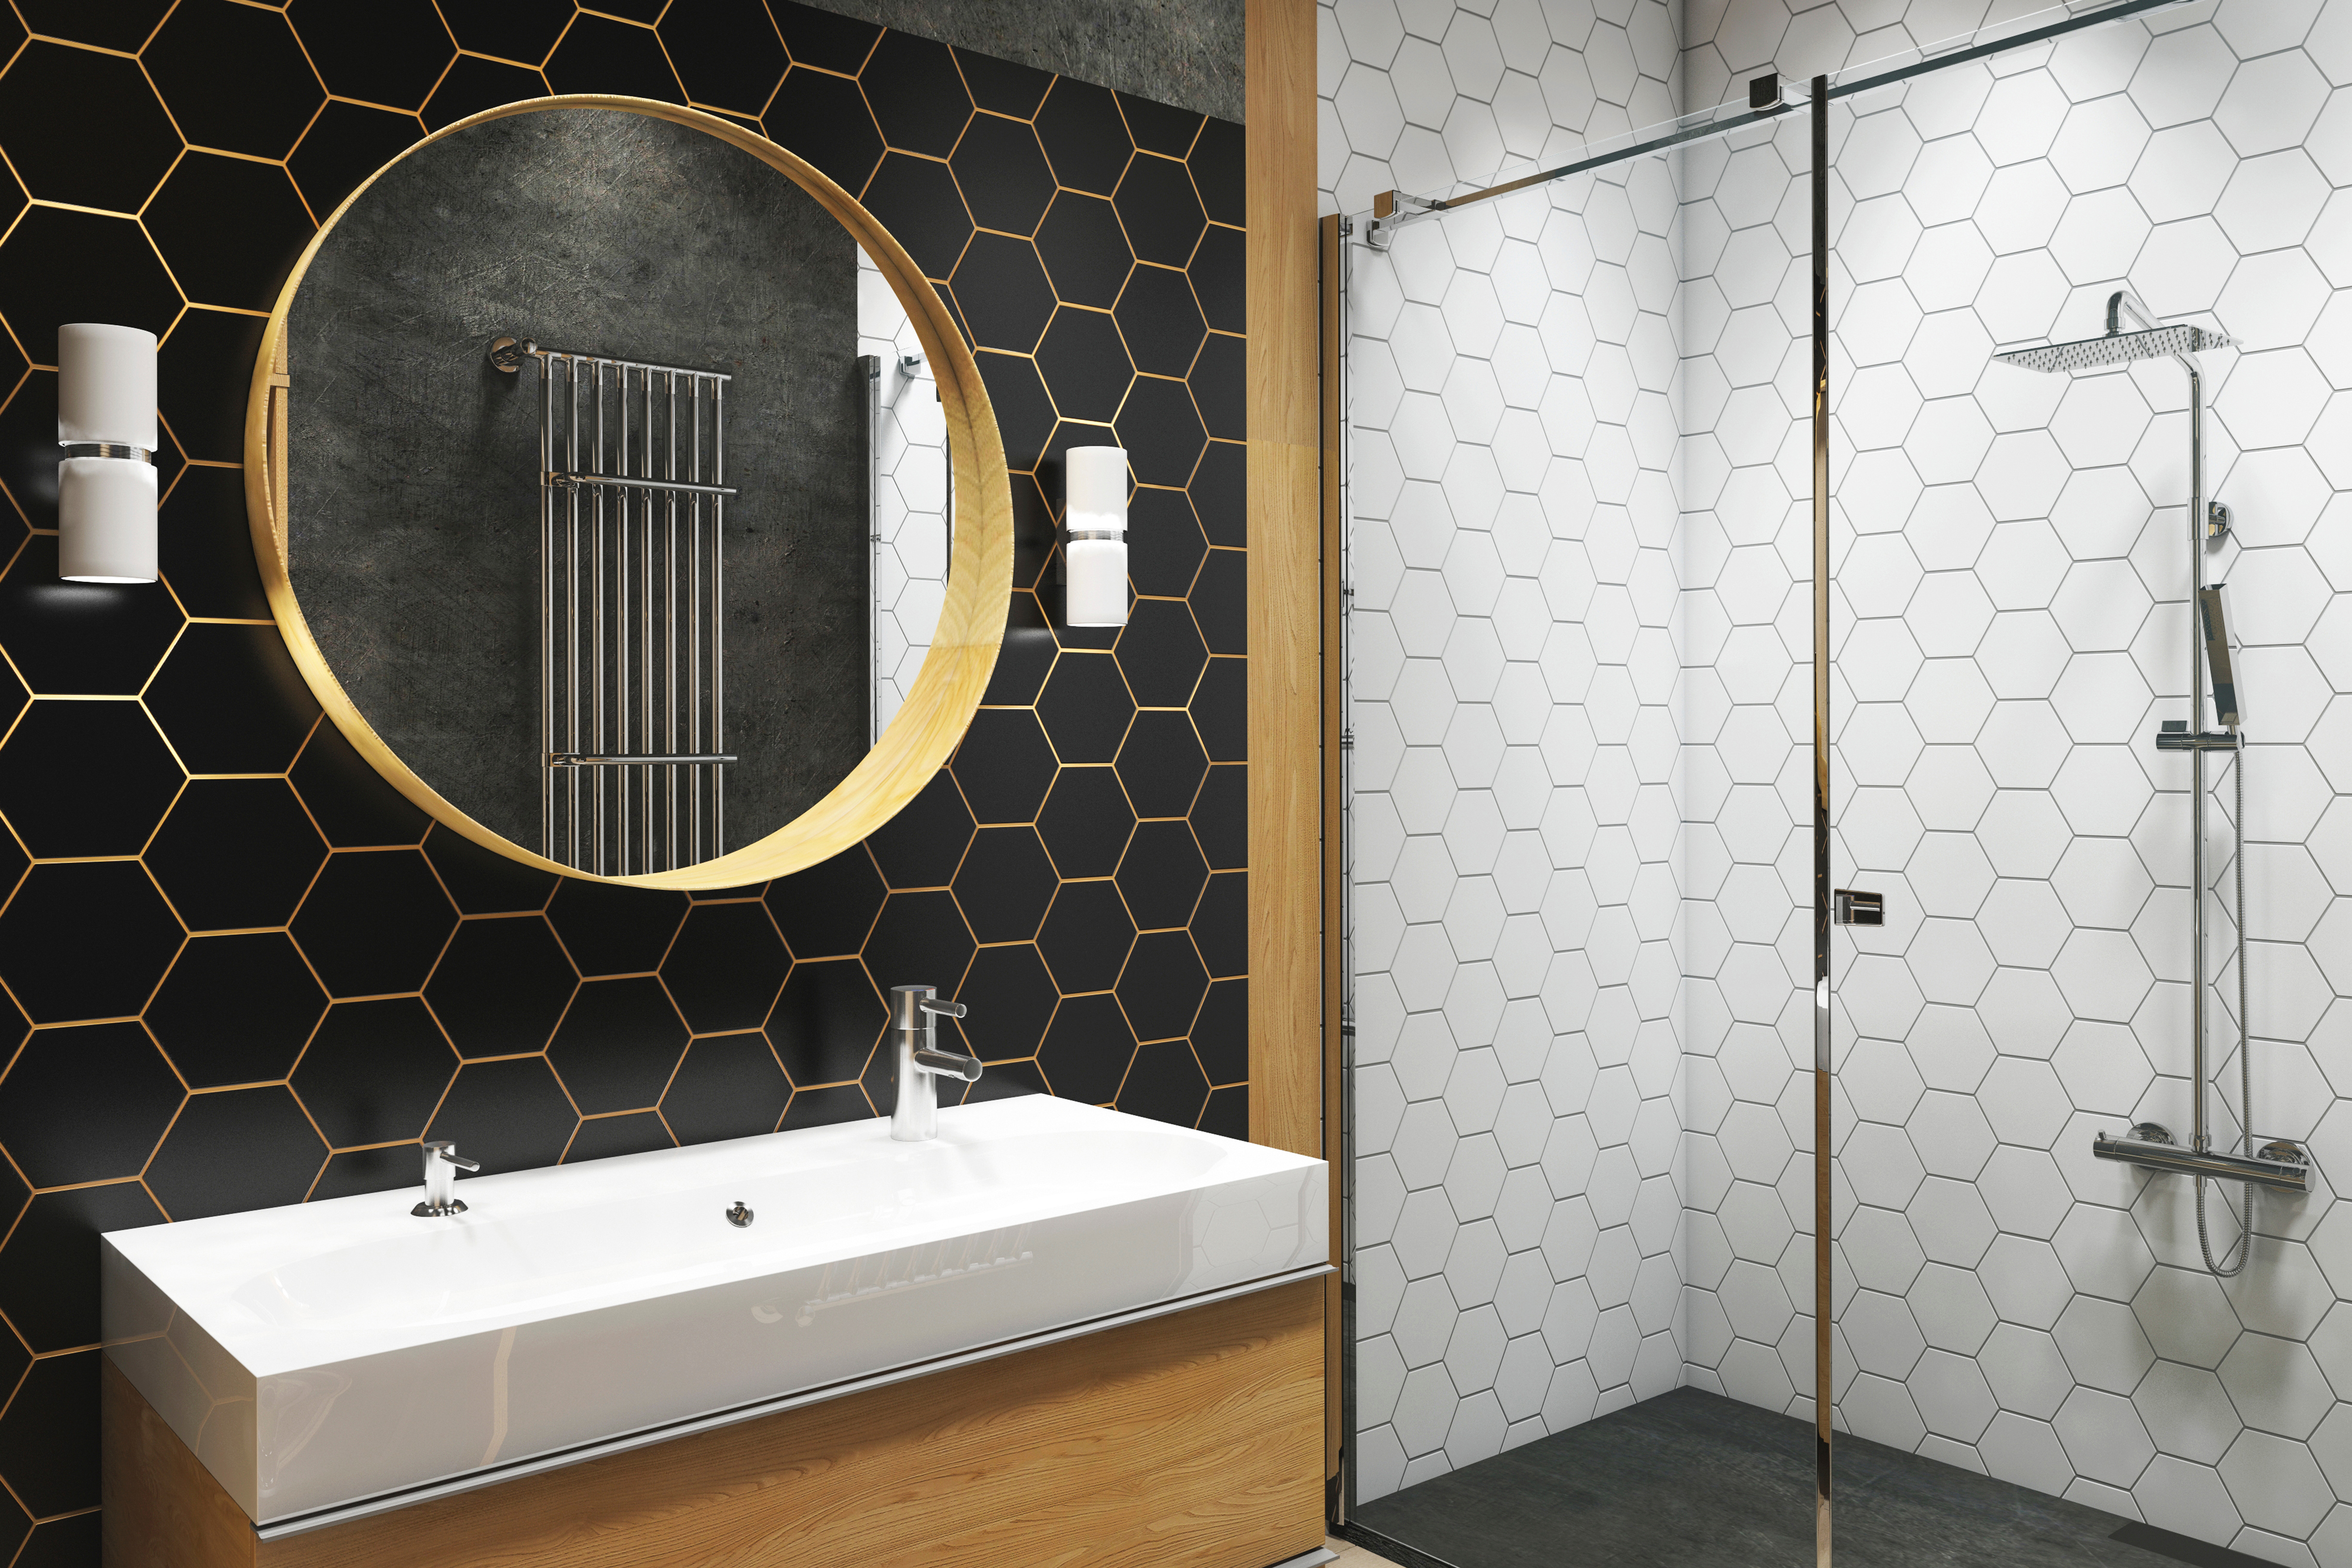 Bathroom wall tile ideas